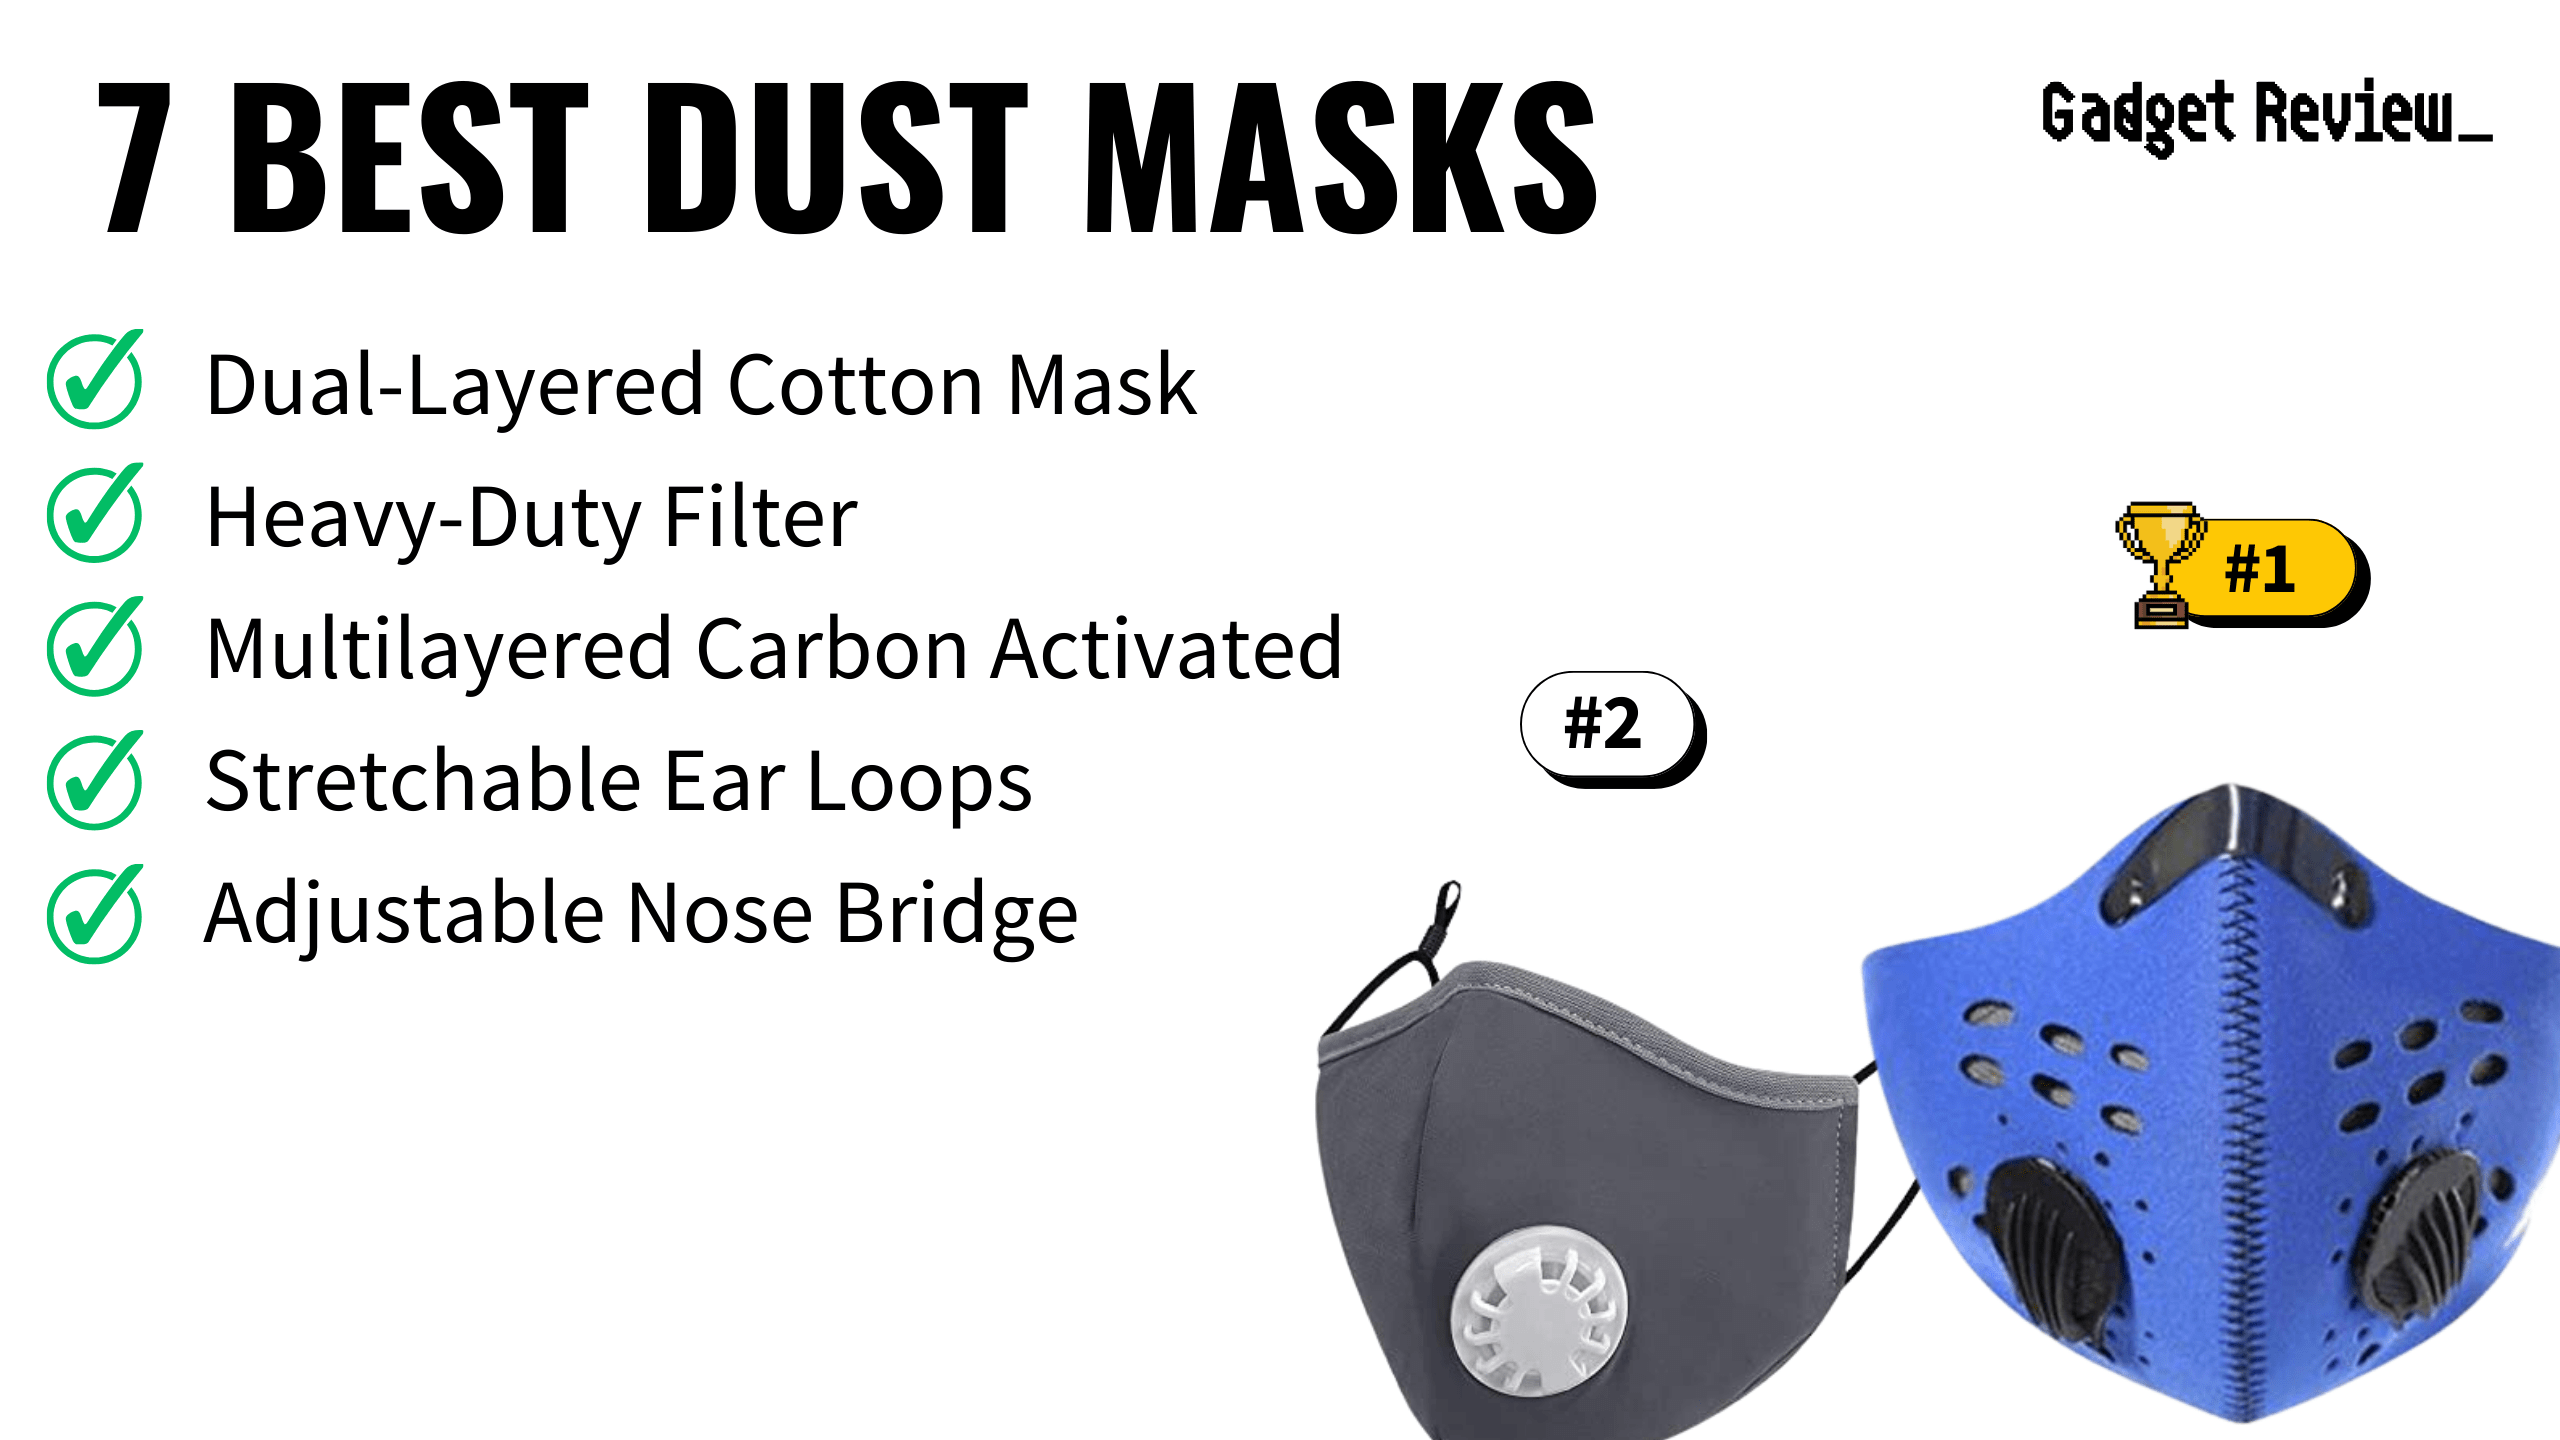 7 Best Dust Masks